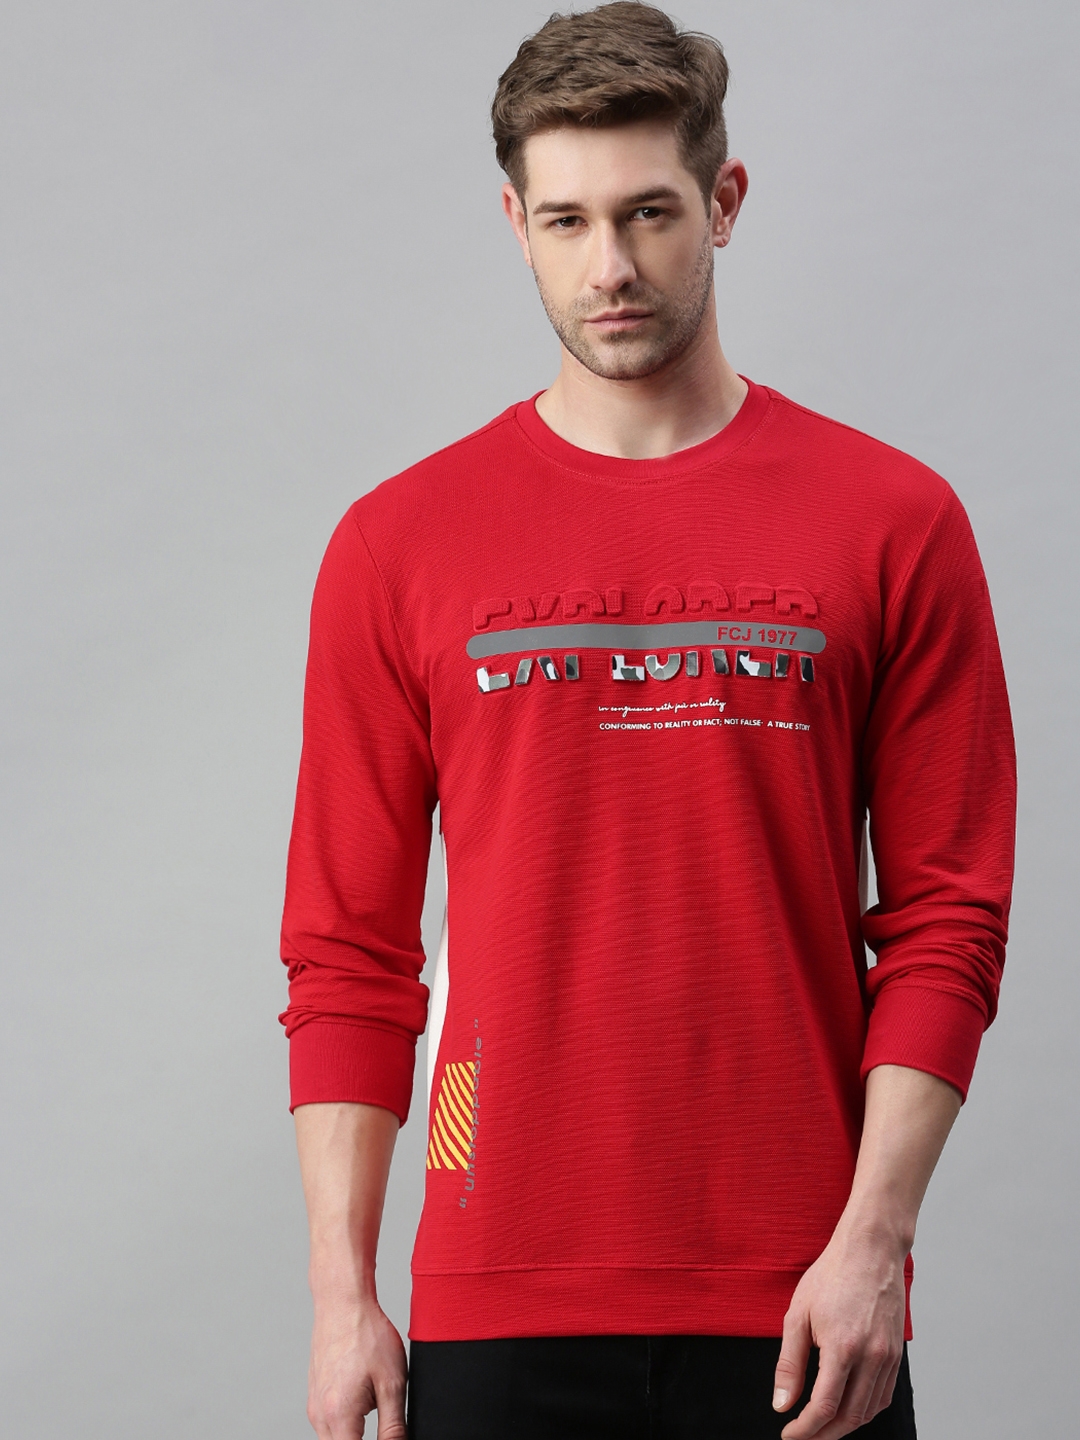 Men's Red Cotton Blend Textured Sweatshirts